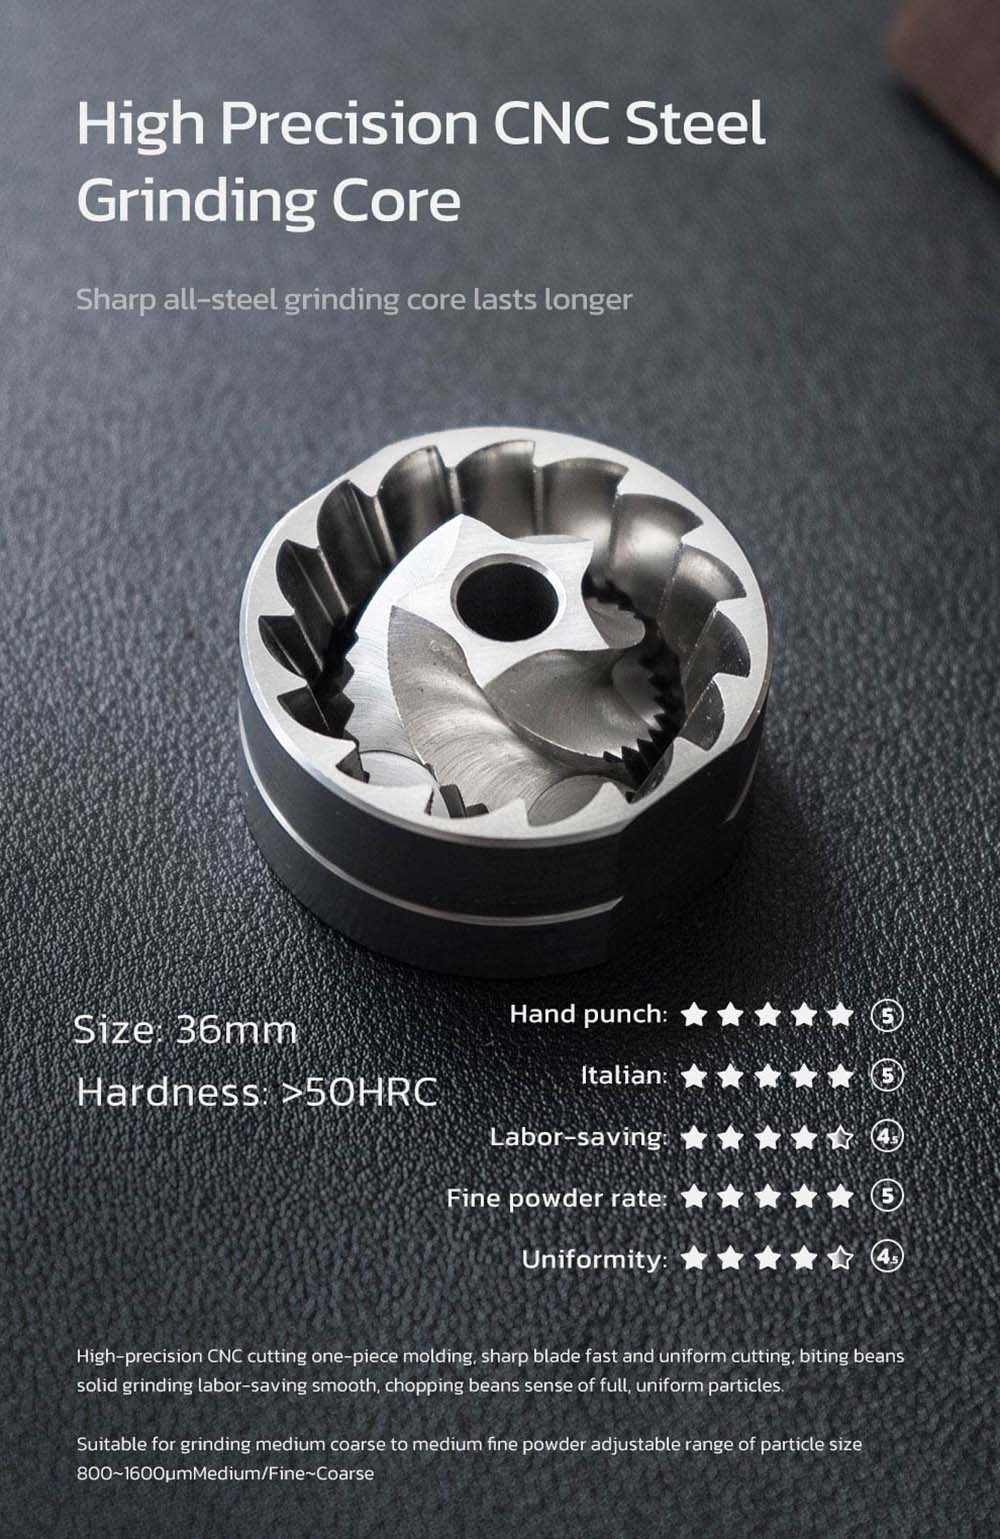 HiBREW G4A Prenosný ručný mlynček na kávu, 36 mm jadro, kovový zásobník na prášok, nastaviteľná presnosť, veľká kapacita 18 g